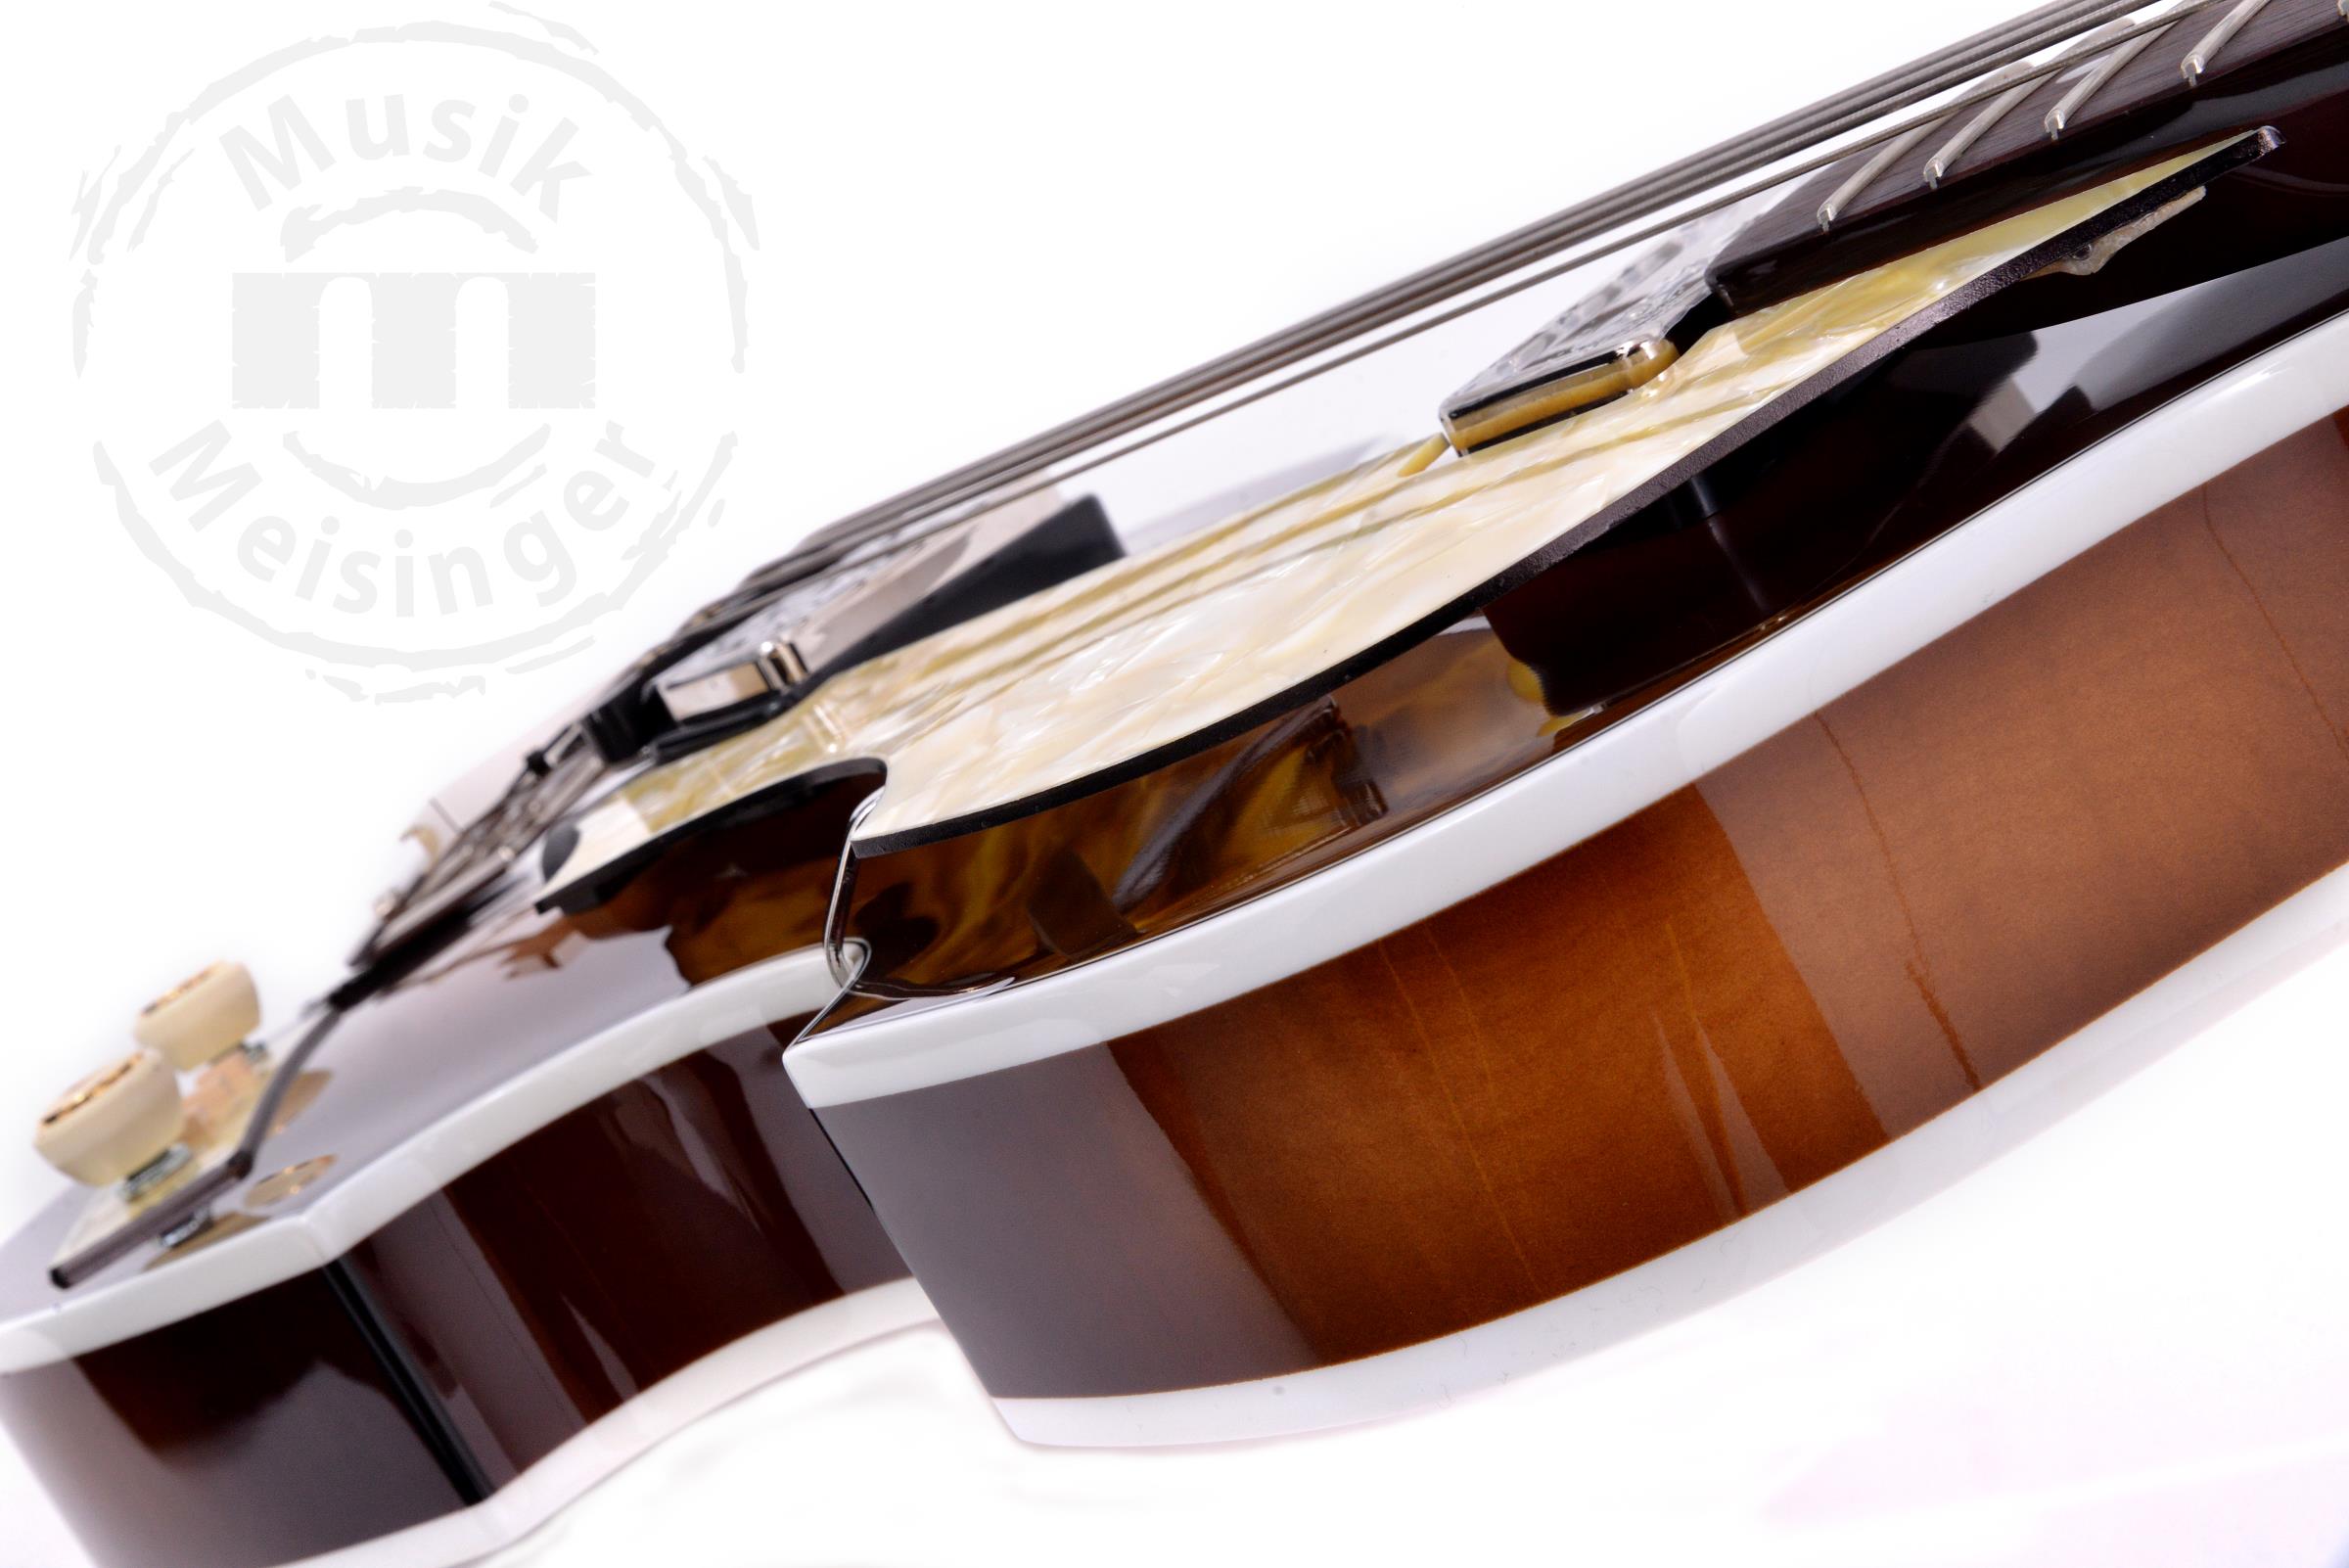 HÖFNER 63 Violin Bass 60th Anniversary Limited Edition